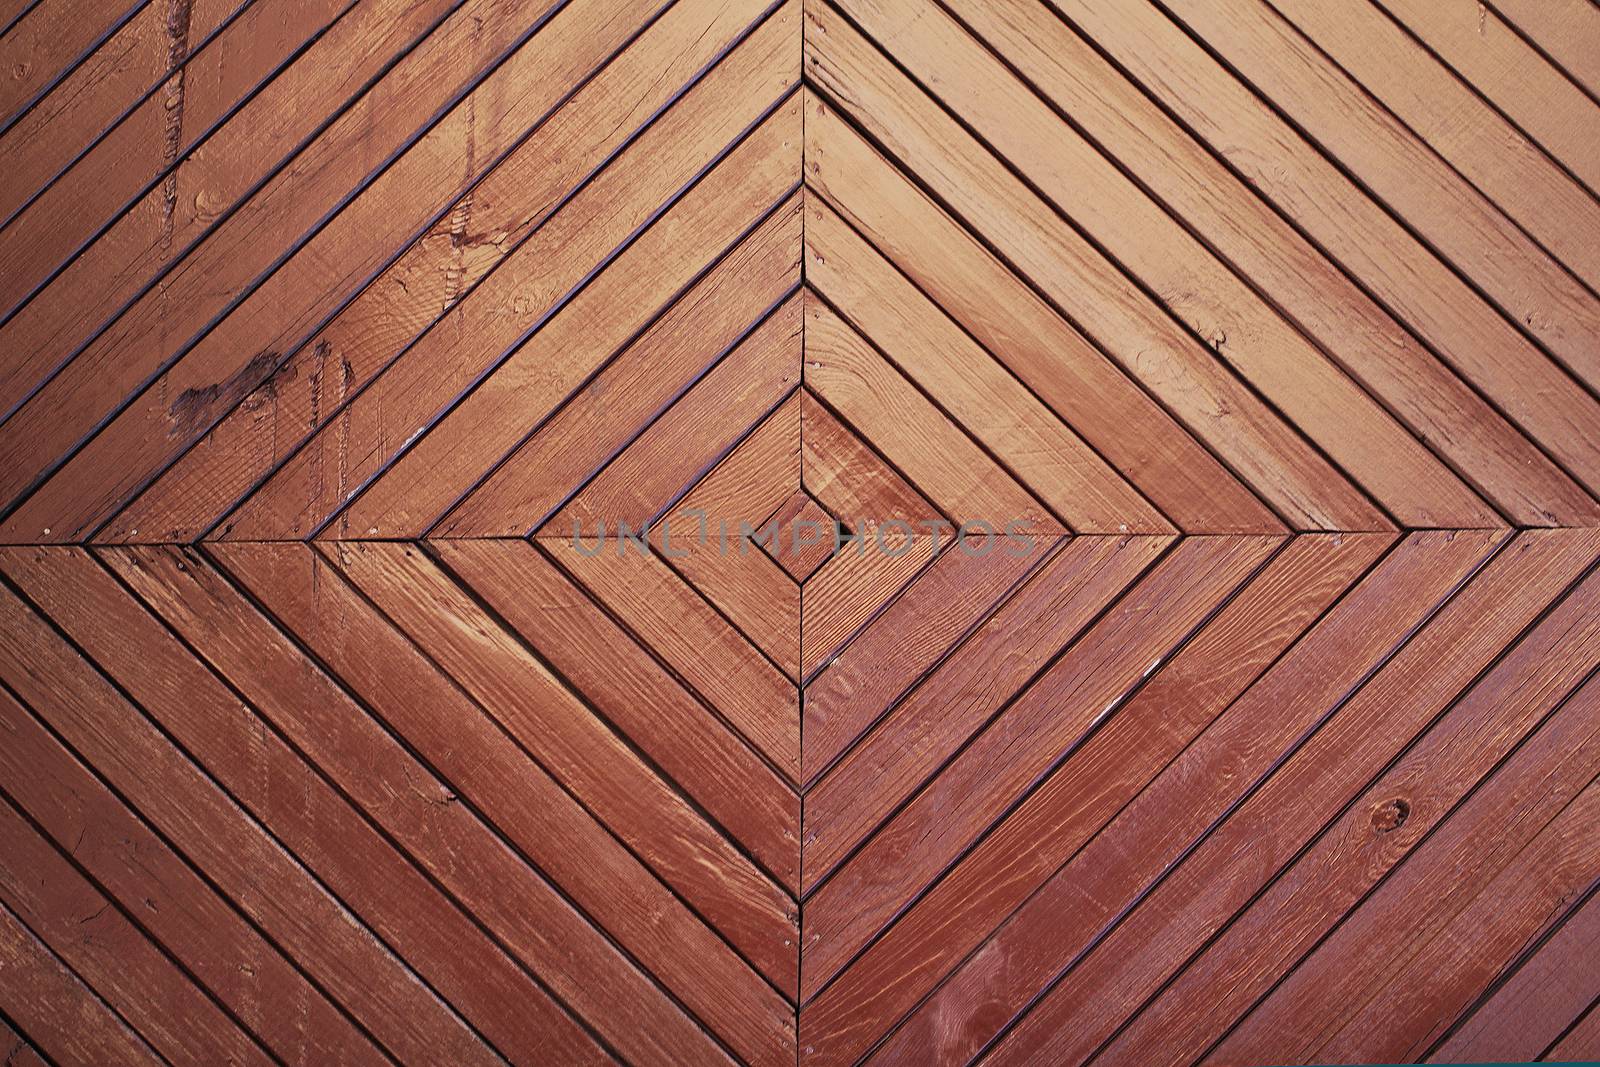 Wooden brown background texture by Voinakh